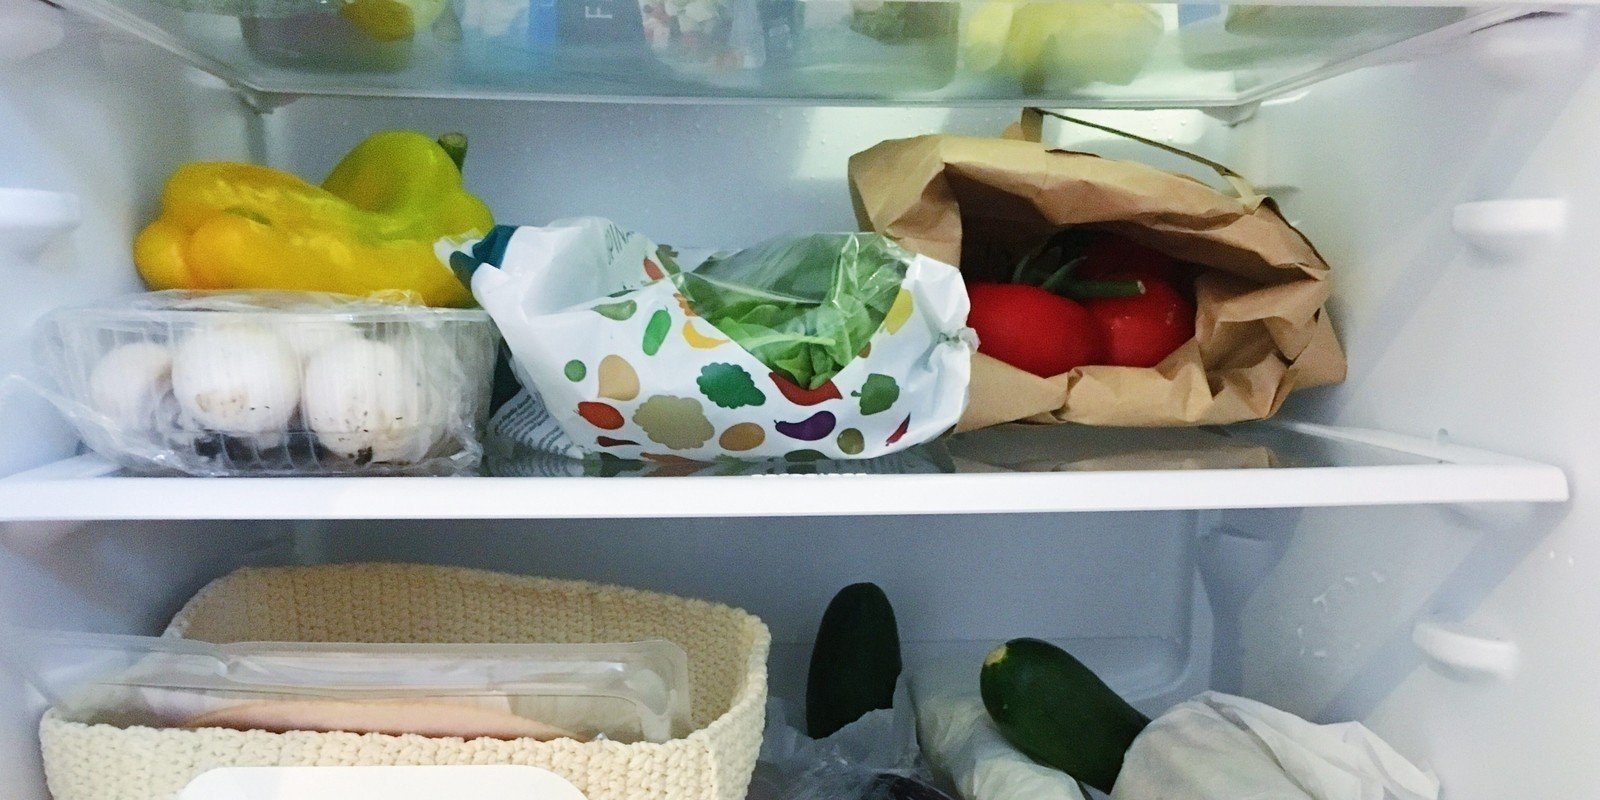 Какие продукты нельзя хранить в холодильнике